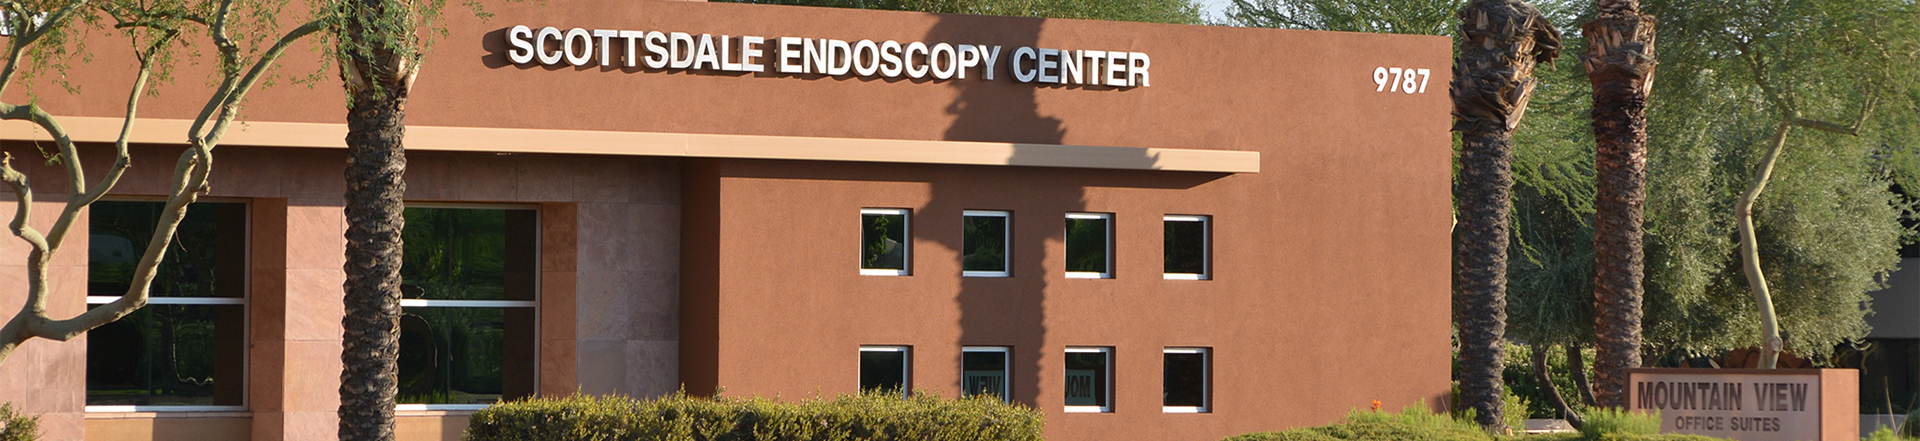 Scottsdale Endoscopy Center